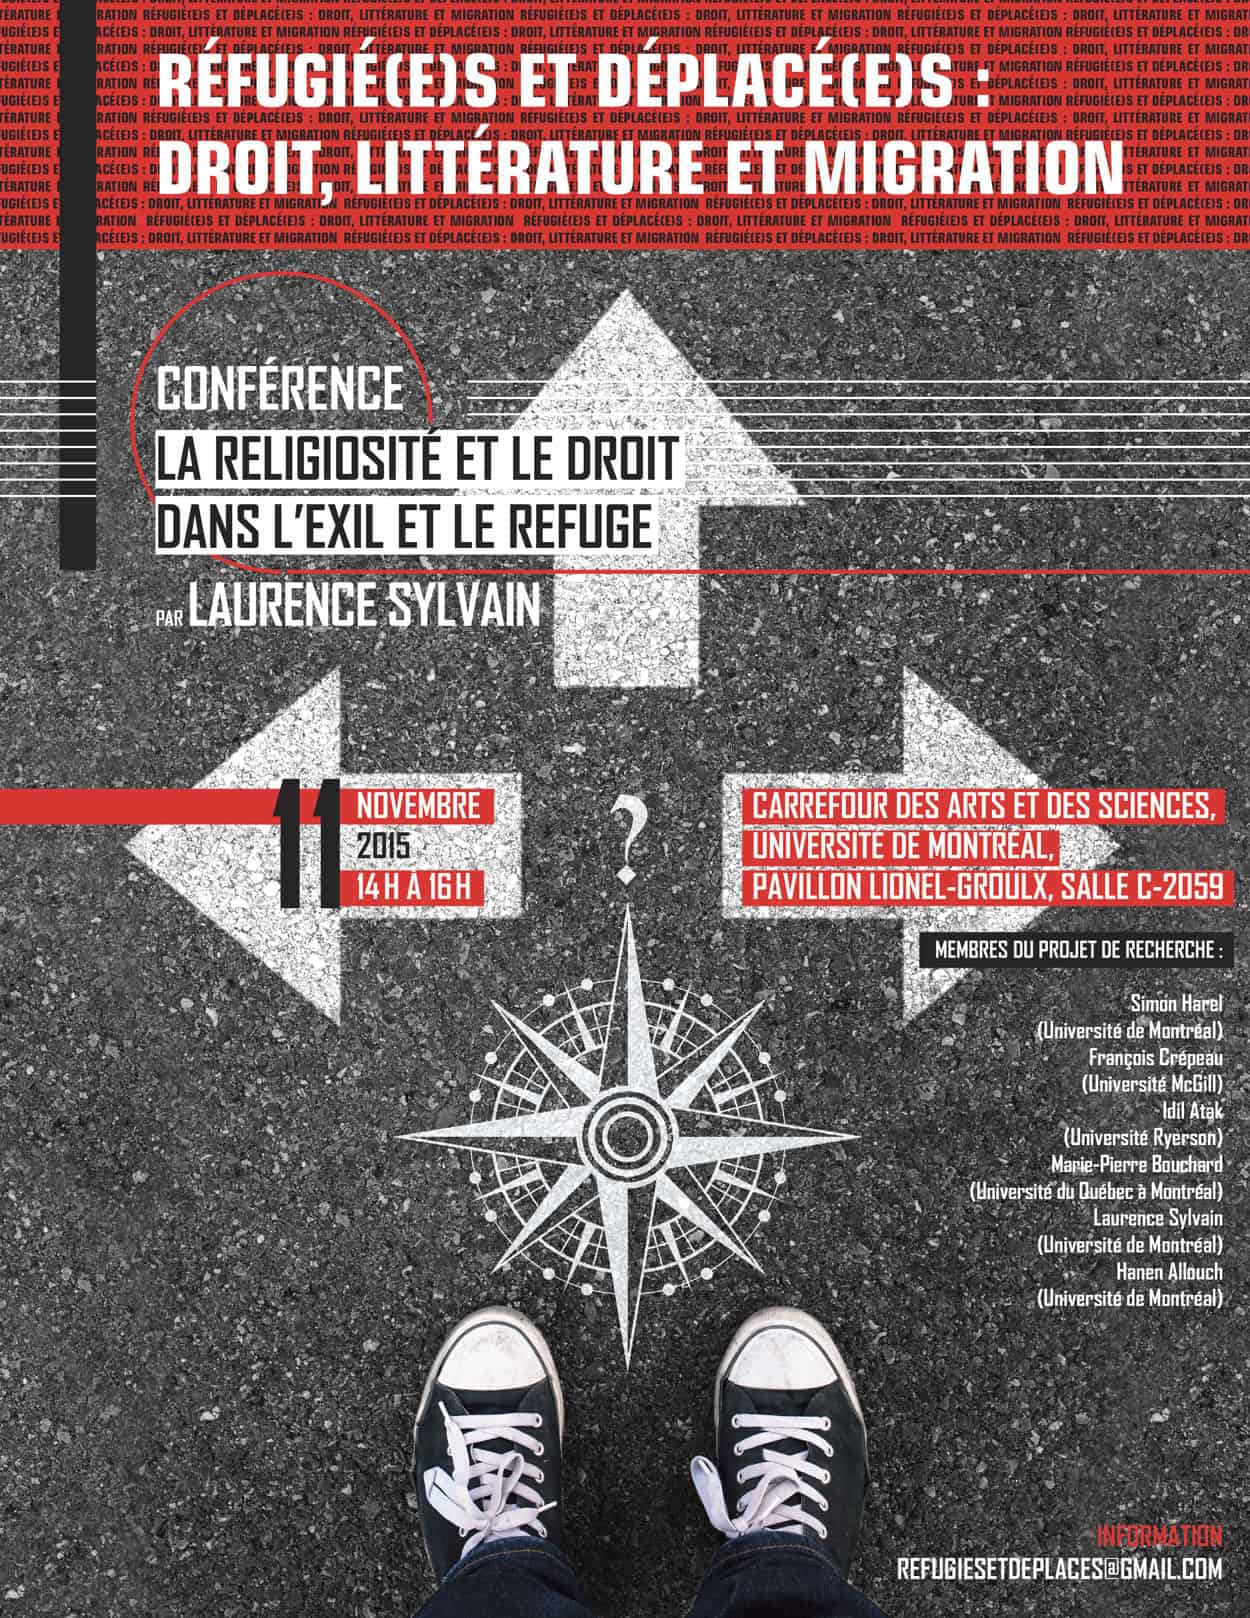 Affiche pour l'Université de Montréal.